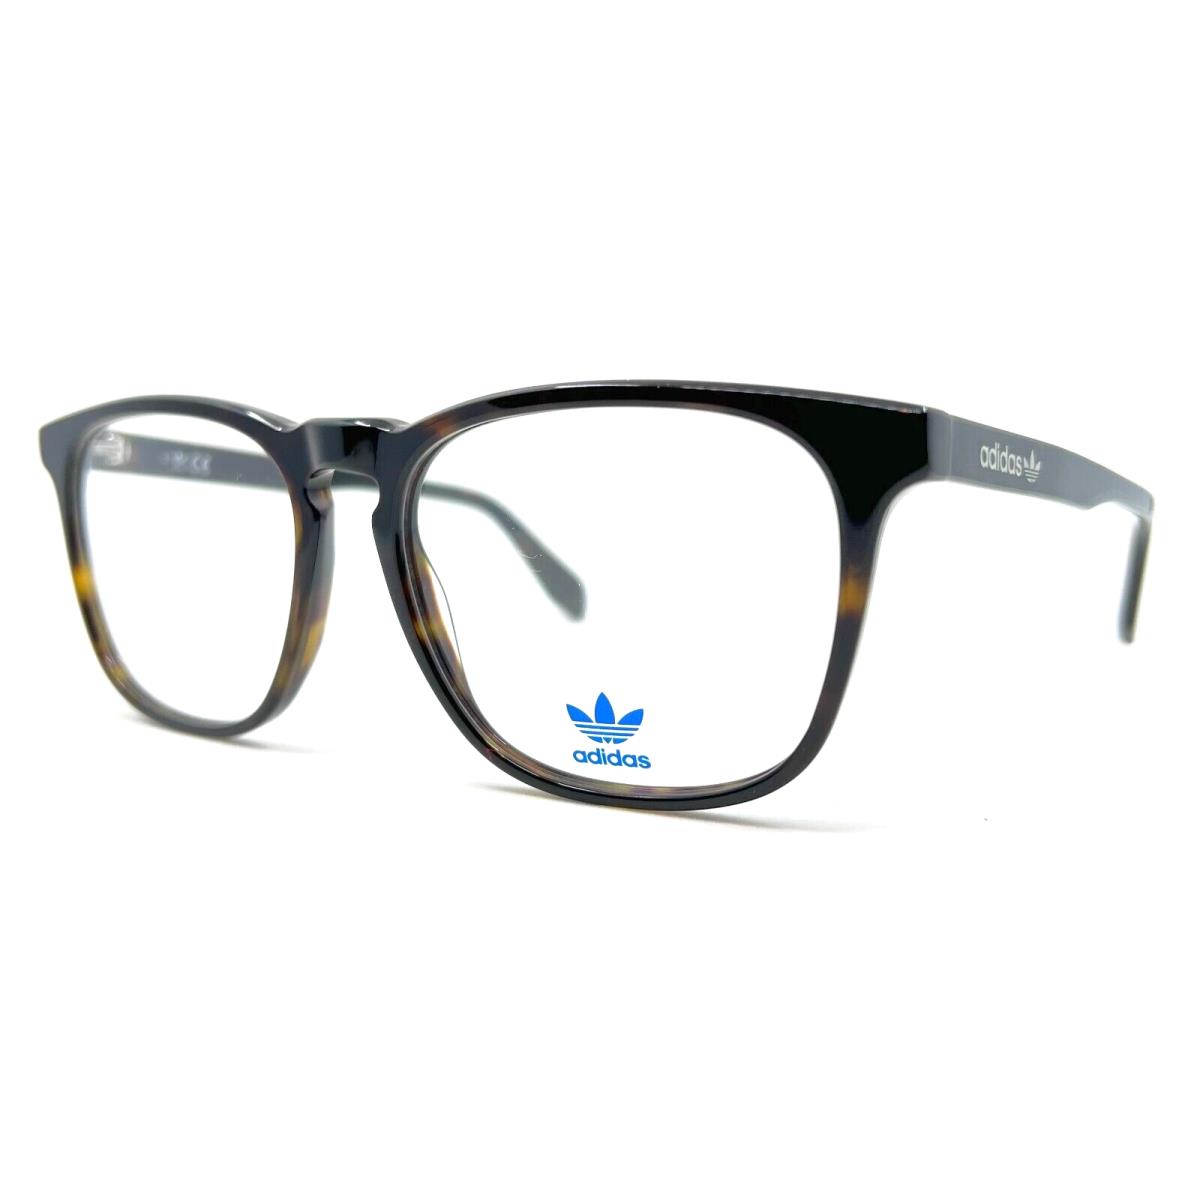 Adidas Originals - OR5020 052 56/16/145 - Tort - Eyeglasses Case - Frame: Brown